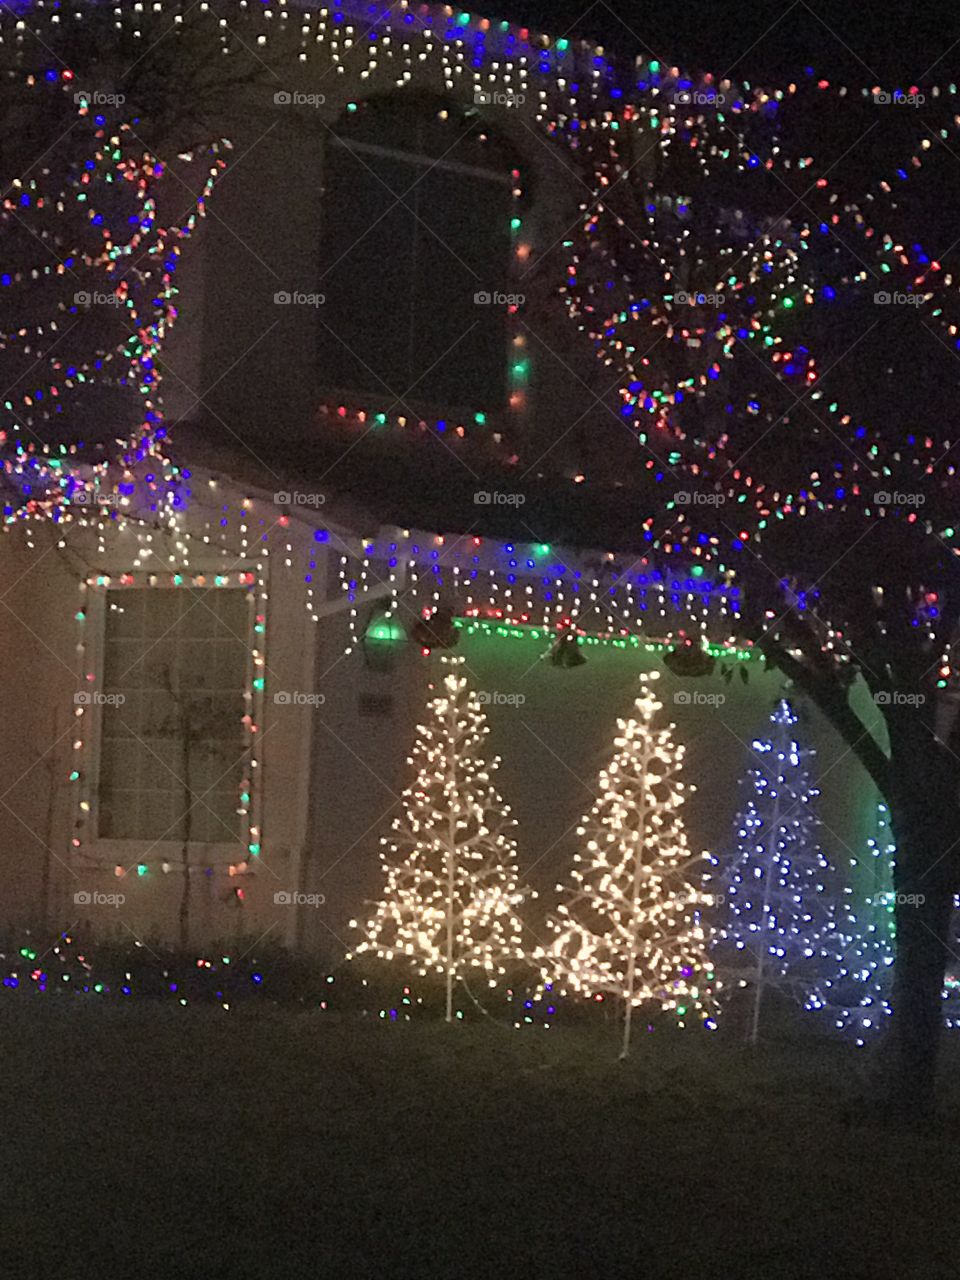 Beautiful Twinkly Holiday Christmas lights at night enjoying the Christmas season . America, USA 